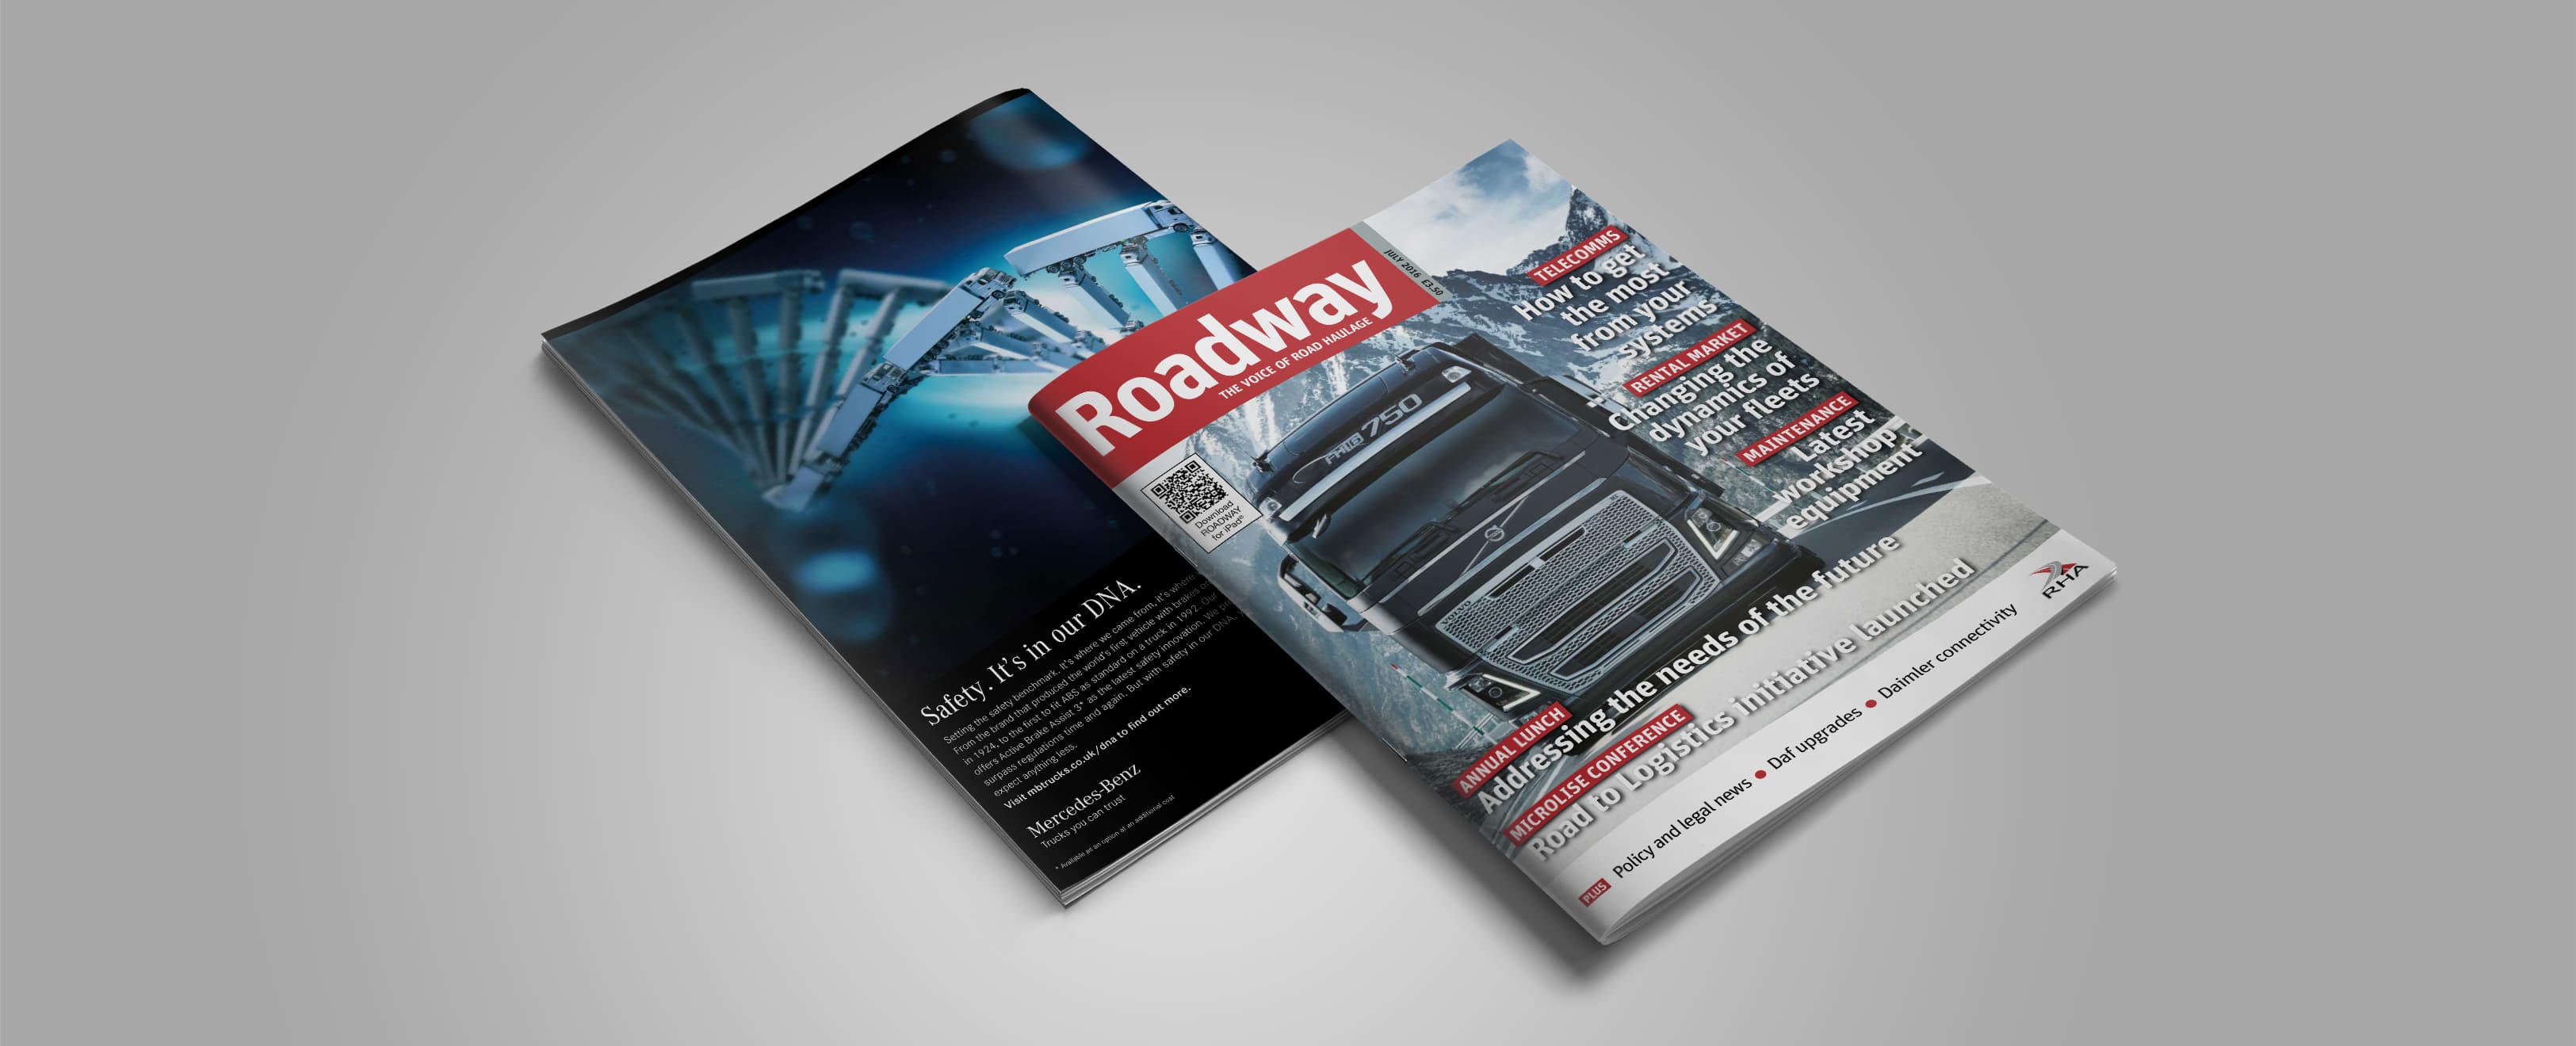 Road Haulage Association Magazine